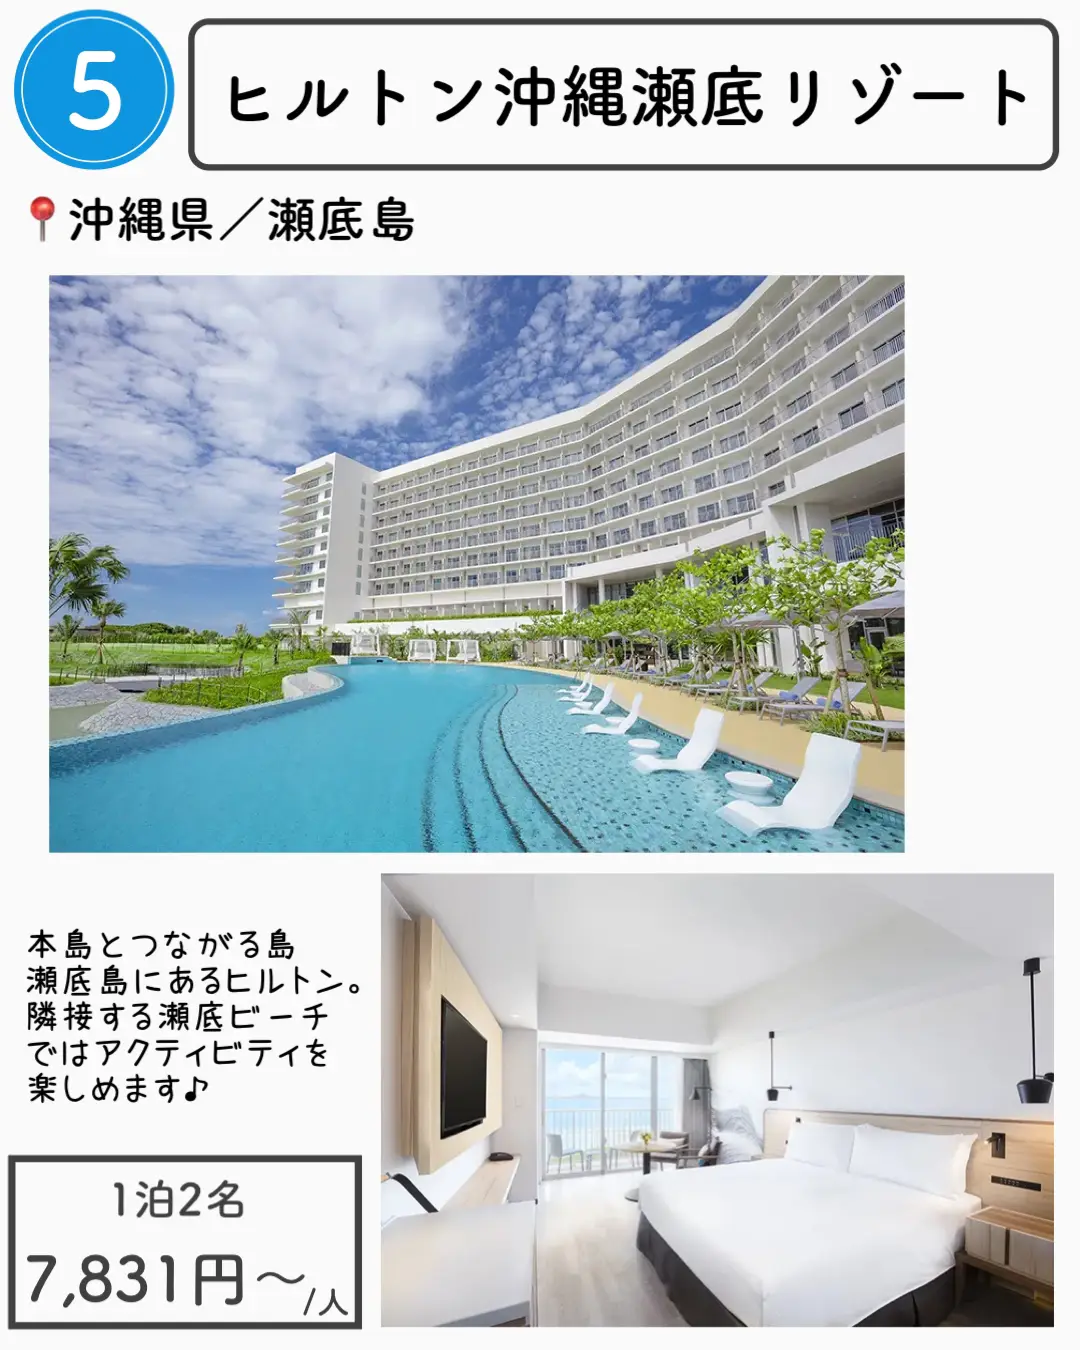 【沖縄】1万円以下で泊まれる沖縄ホテル7選の画像 (5枚目)